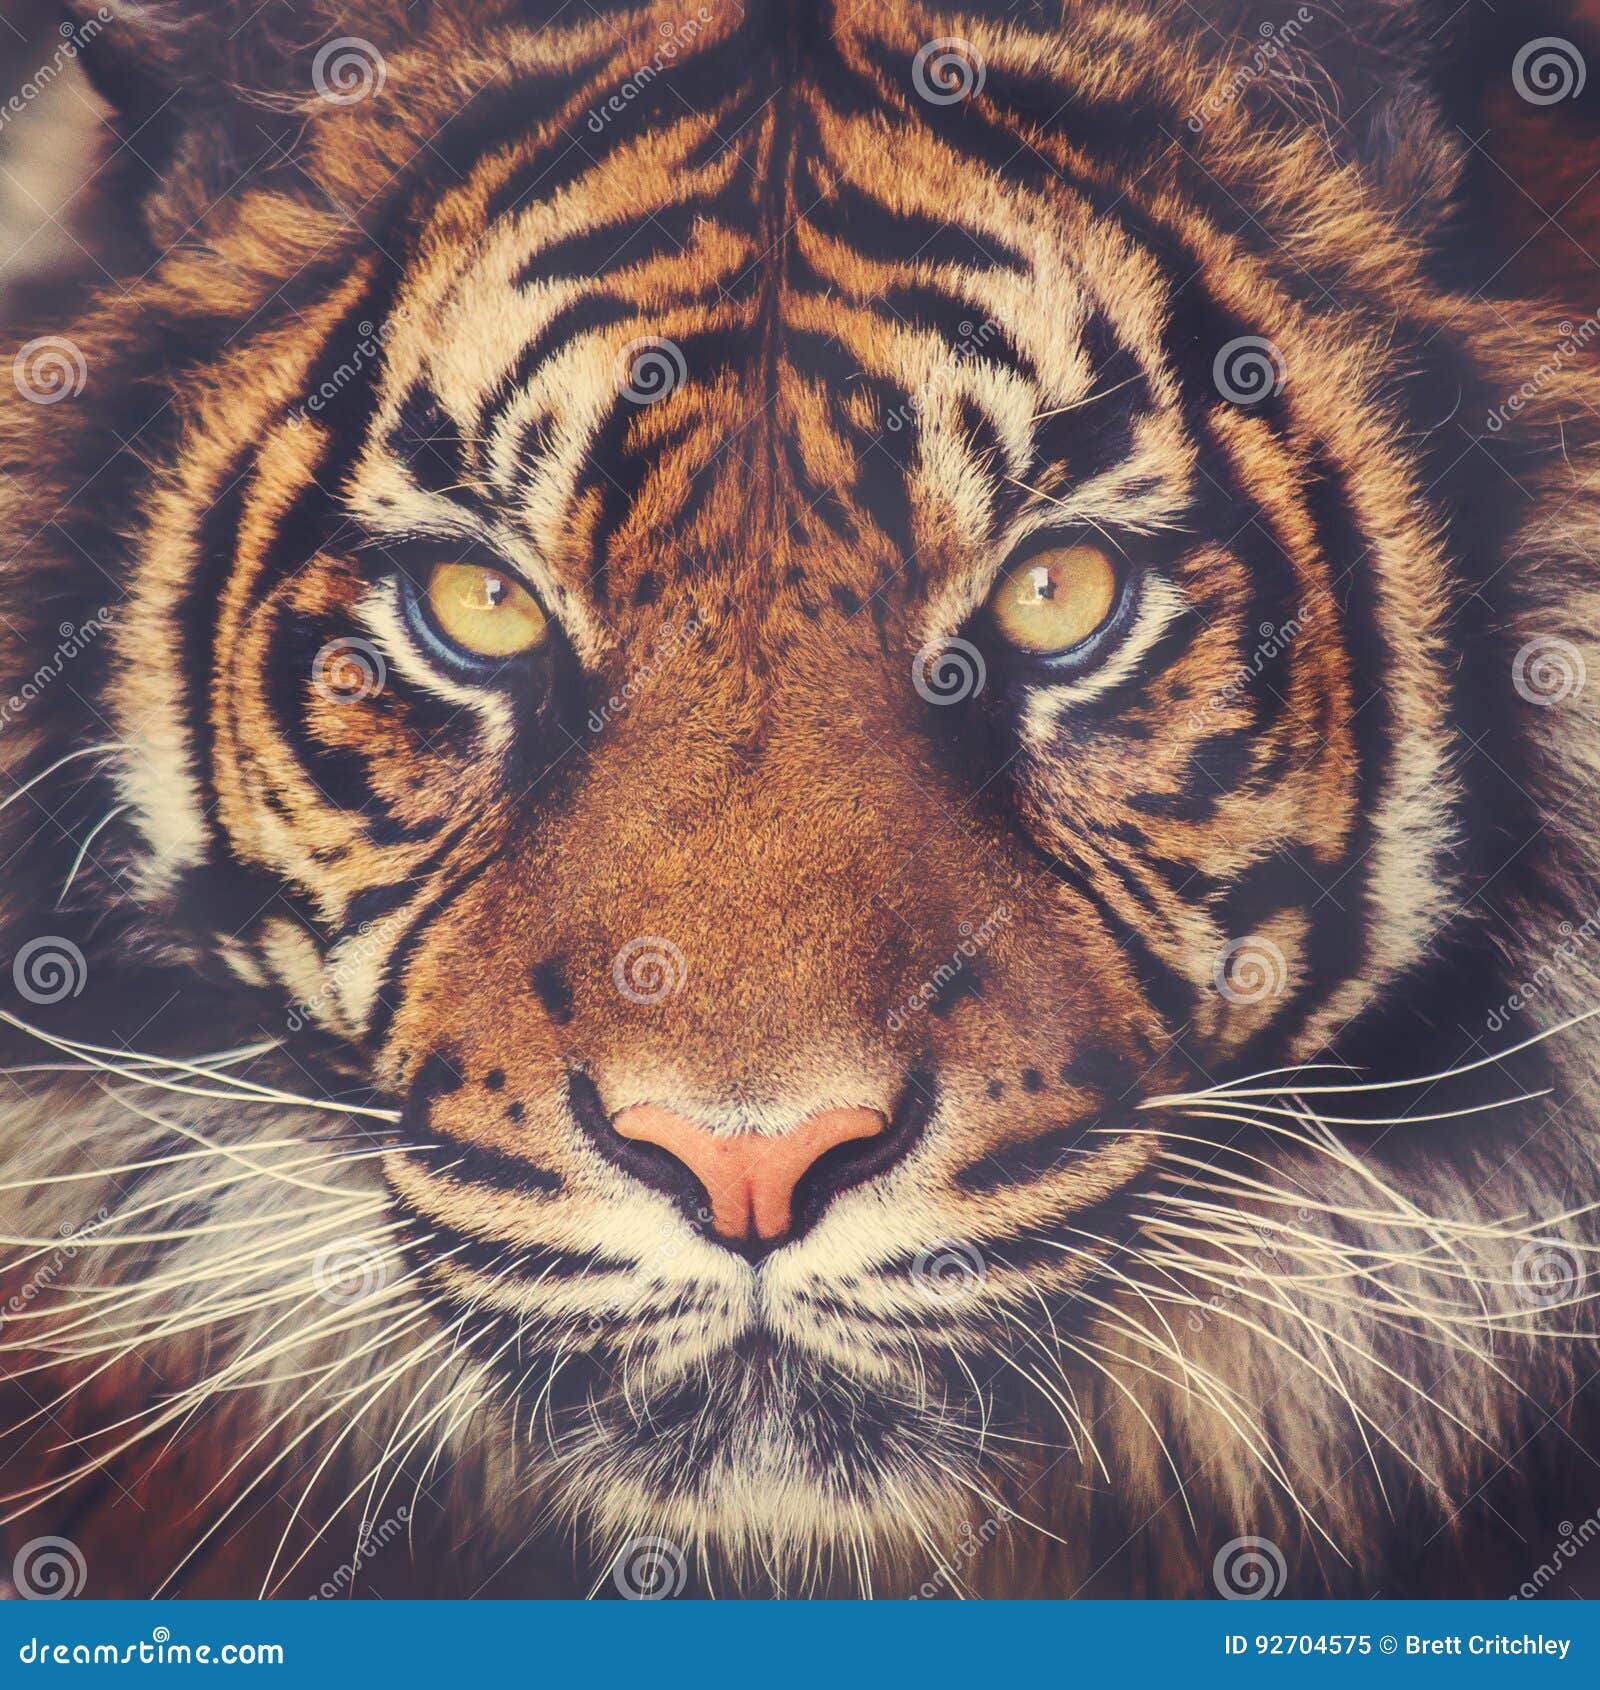 stunning tiger face